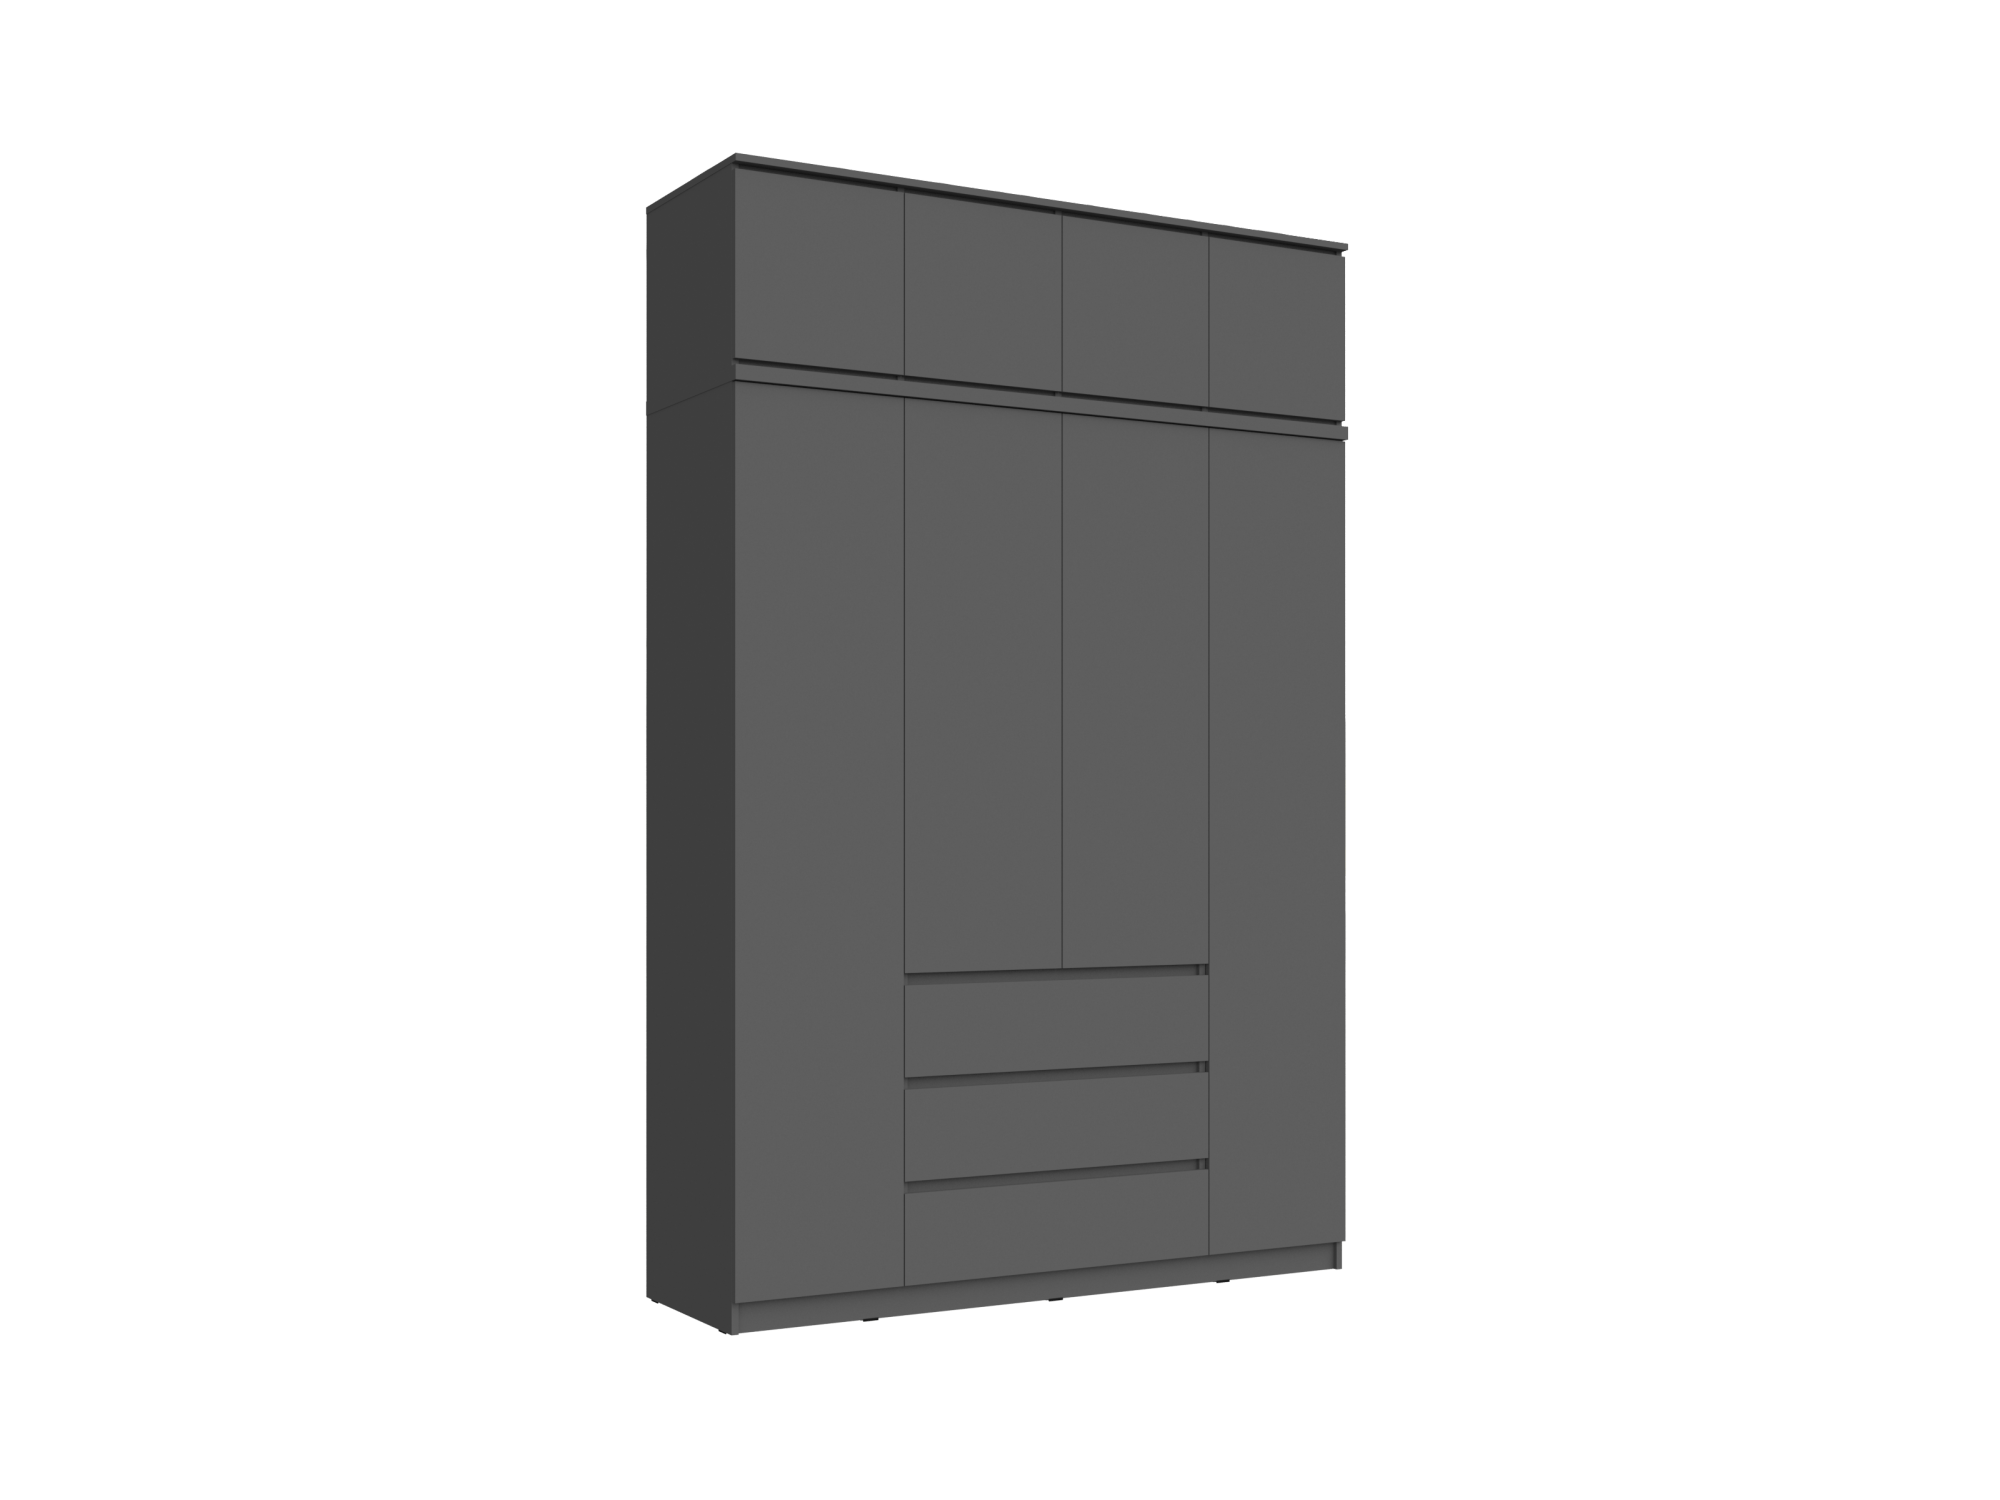 Челси Шкаф 1600 + антресоль 1600 (Графит, Графит) Черный, ЛДСП челси пенал 1 створка антресоль 400 графит графит графит черный лдсп